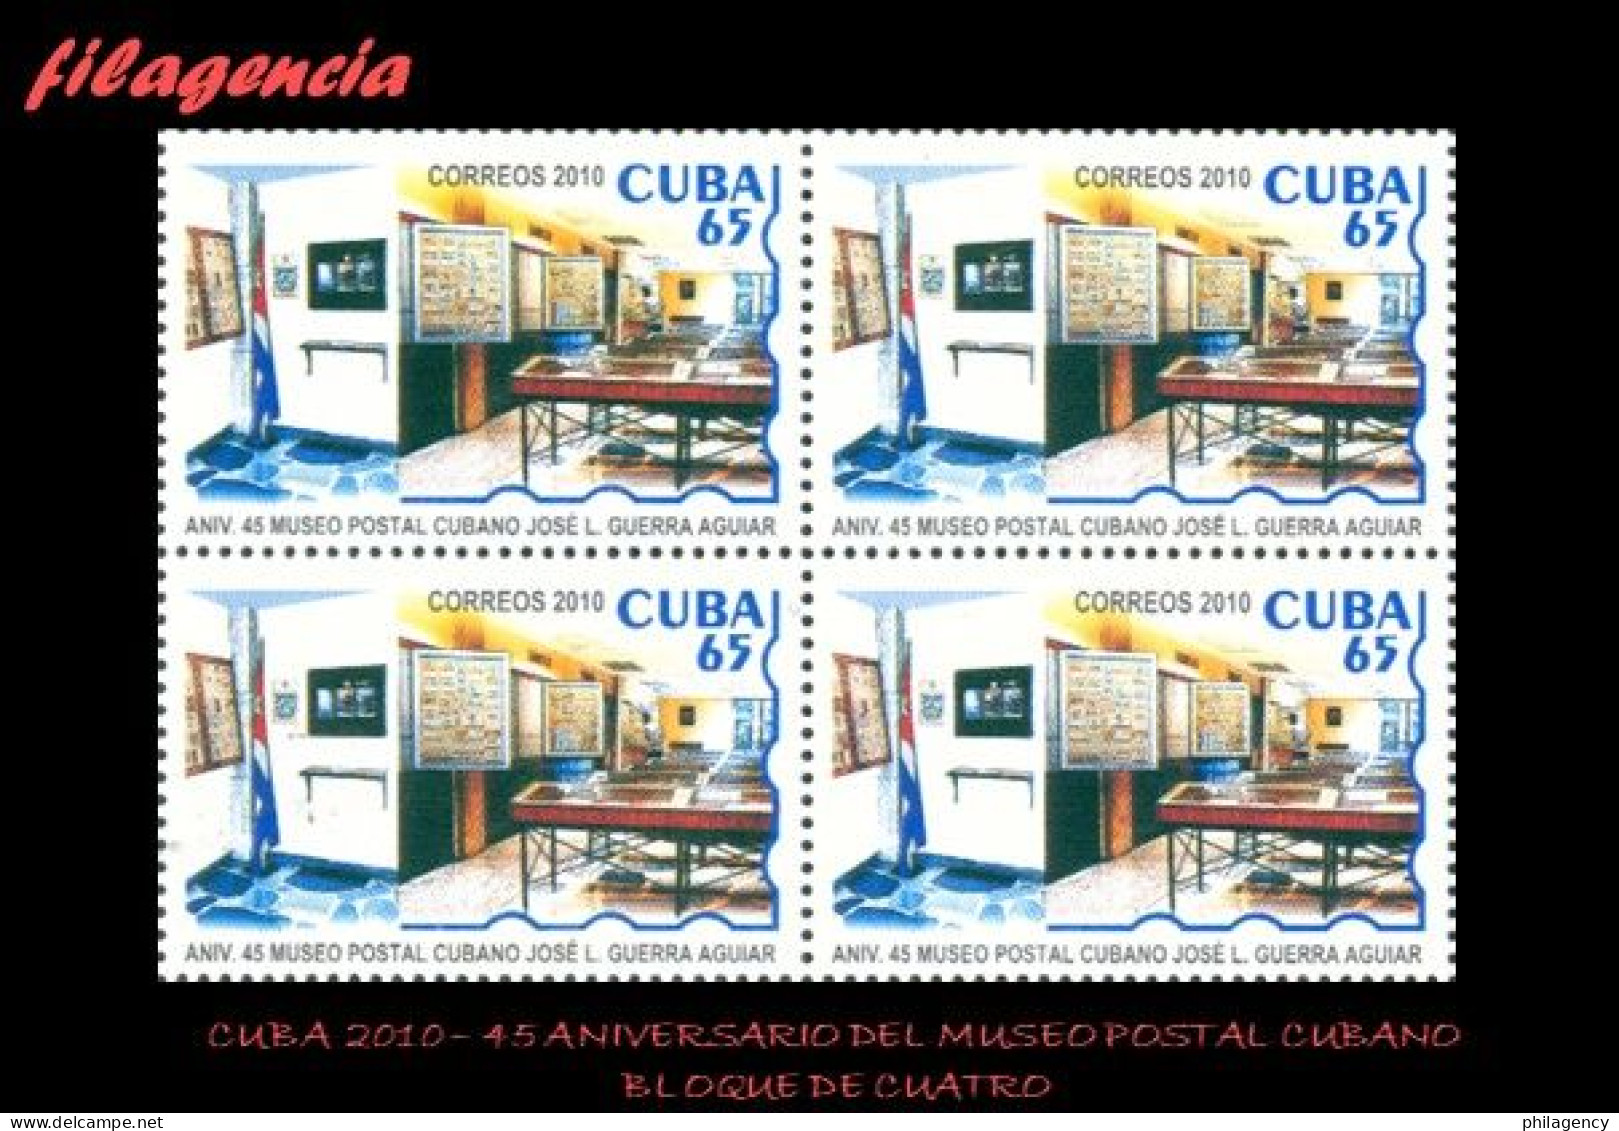 CUBA. BLOQUES DE CUATRO. 2010-01 45 ANIVERSARIO DEL MUSEO POSTAL CUBANO - Unused Stamps